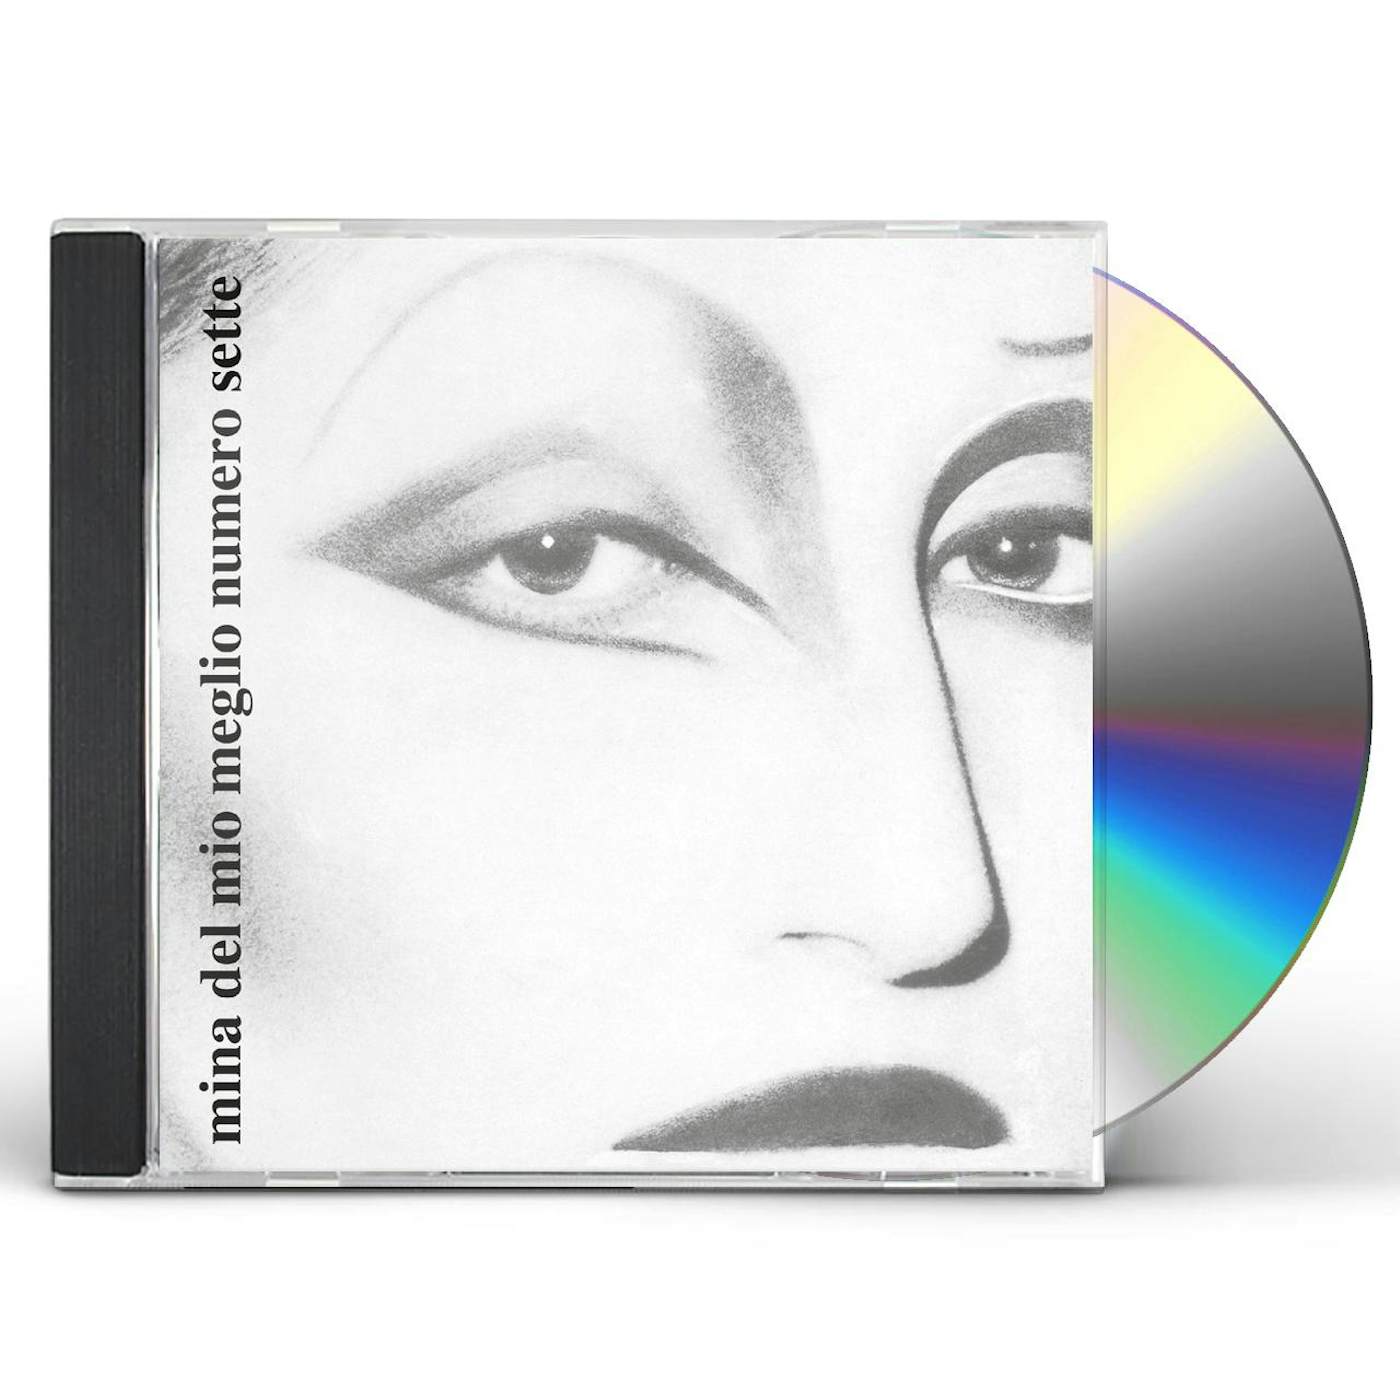 Mina DEL MIO MEGLIO 7 CD